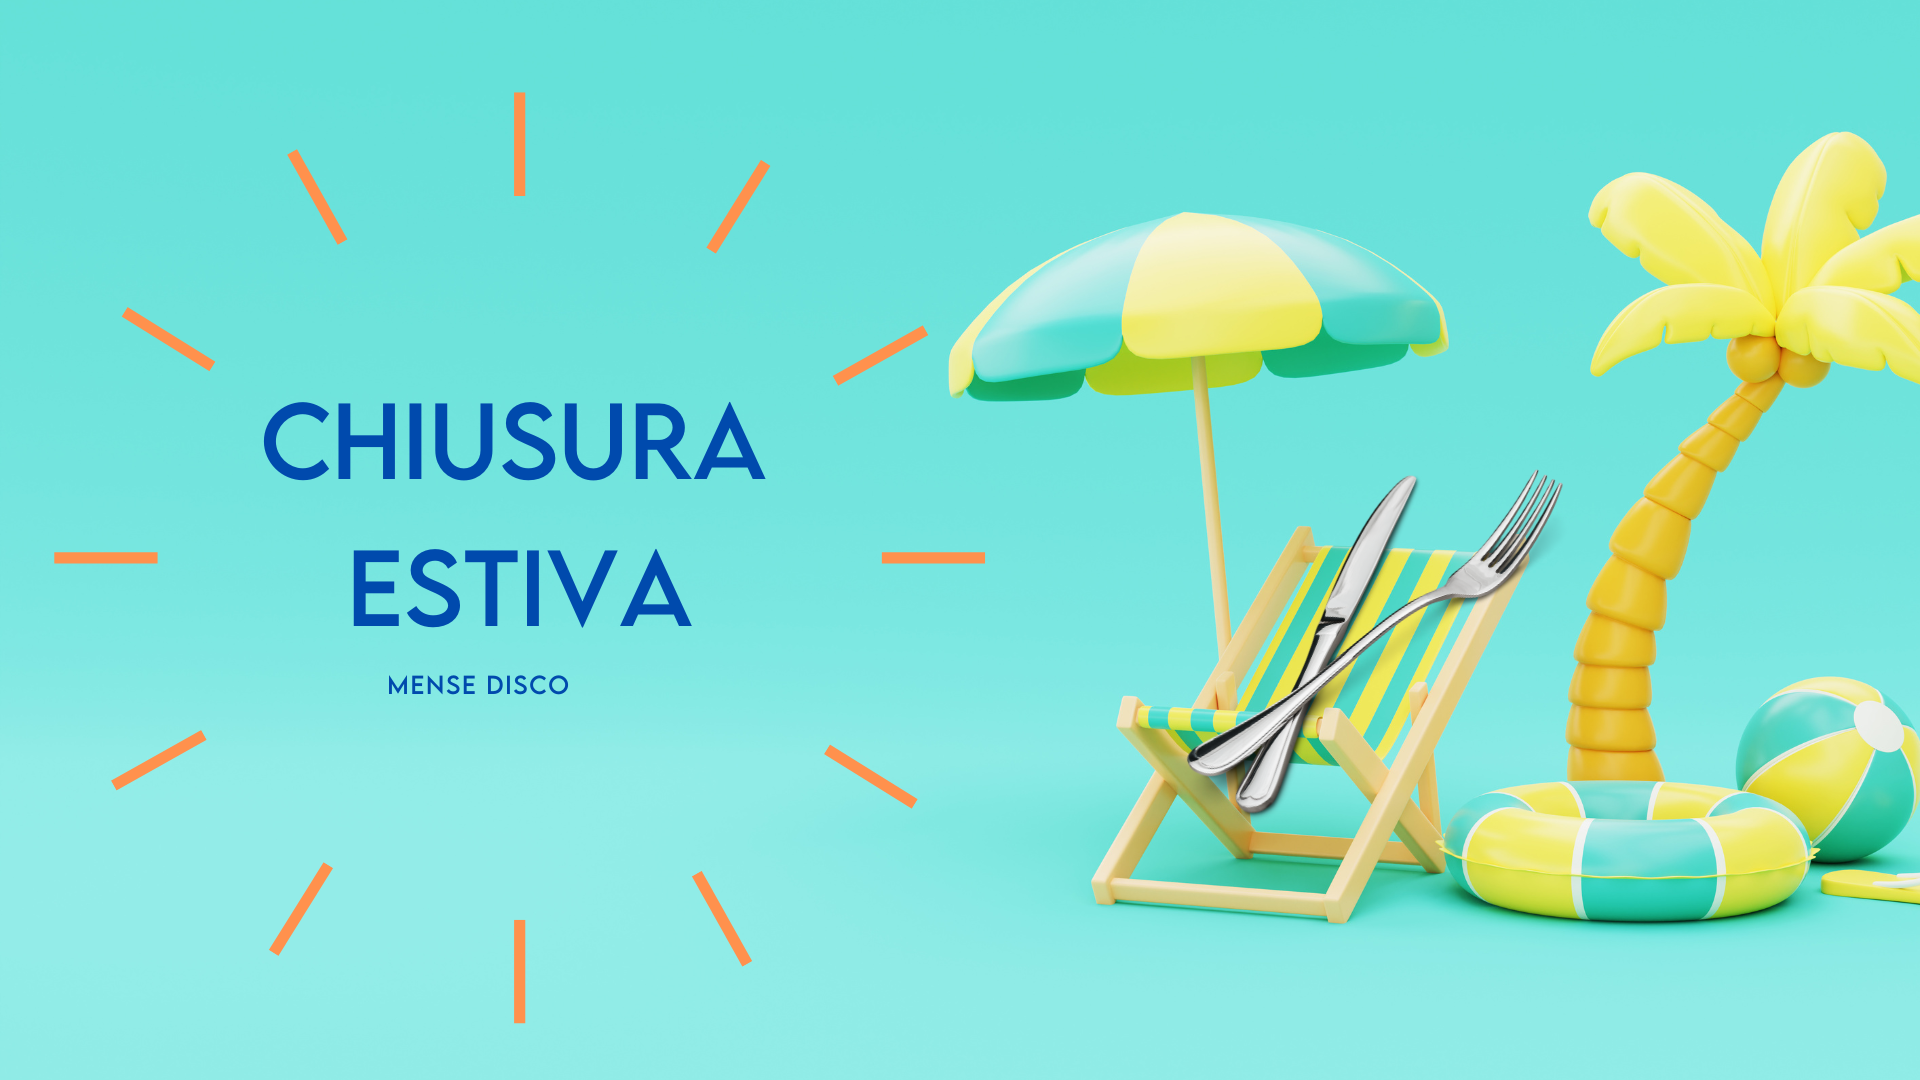 illustrazione posate sotto ombrellone e scritta "Chiusura estiva"